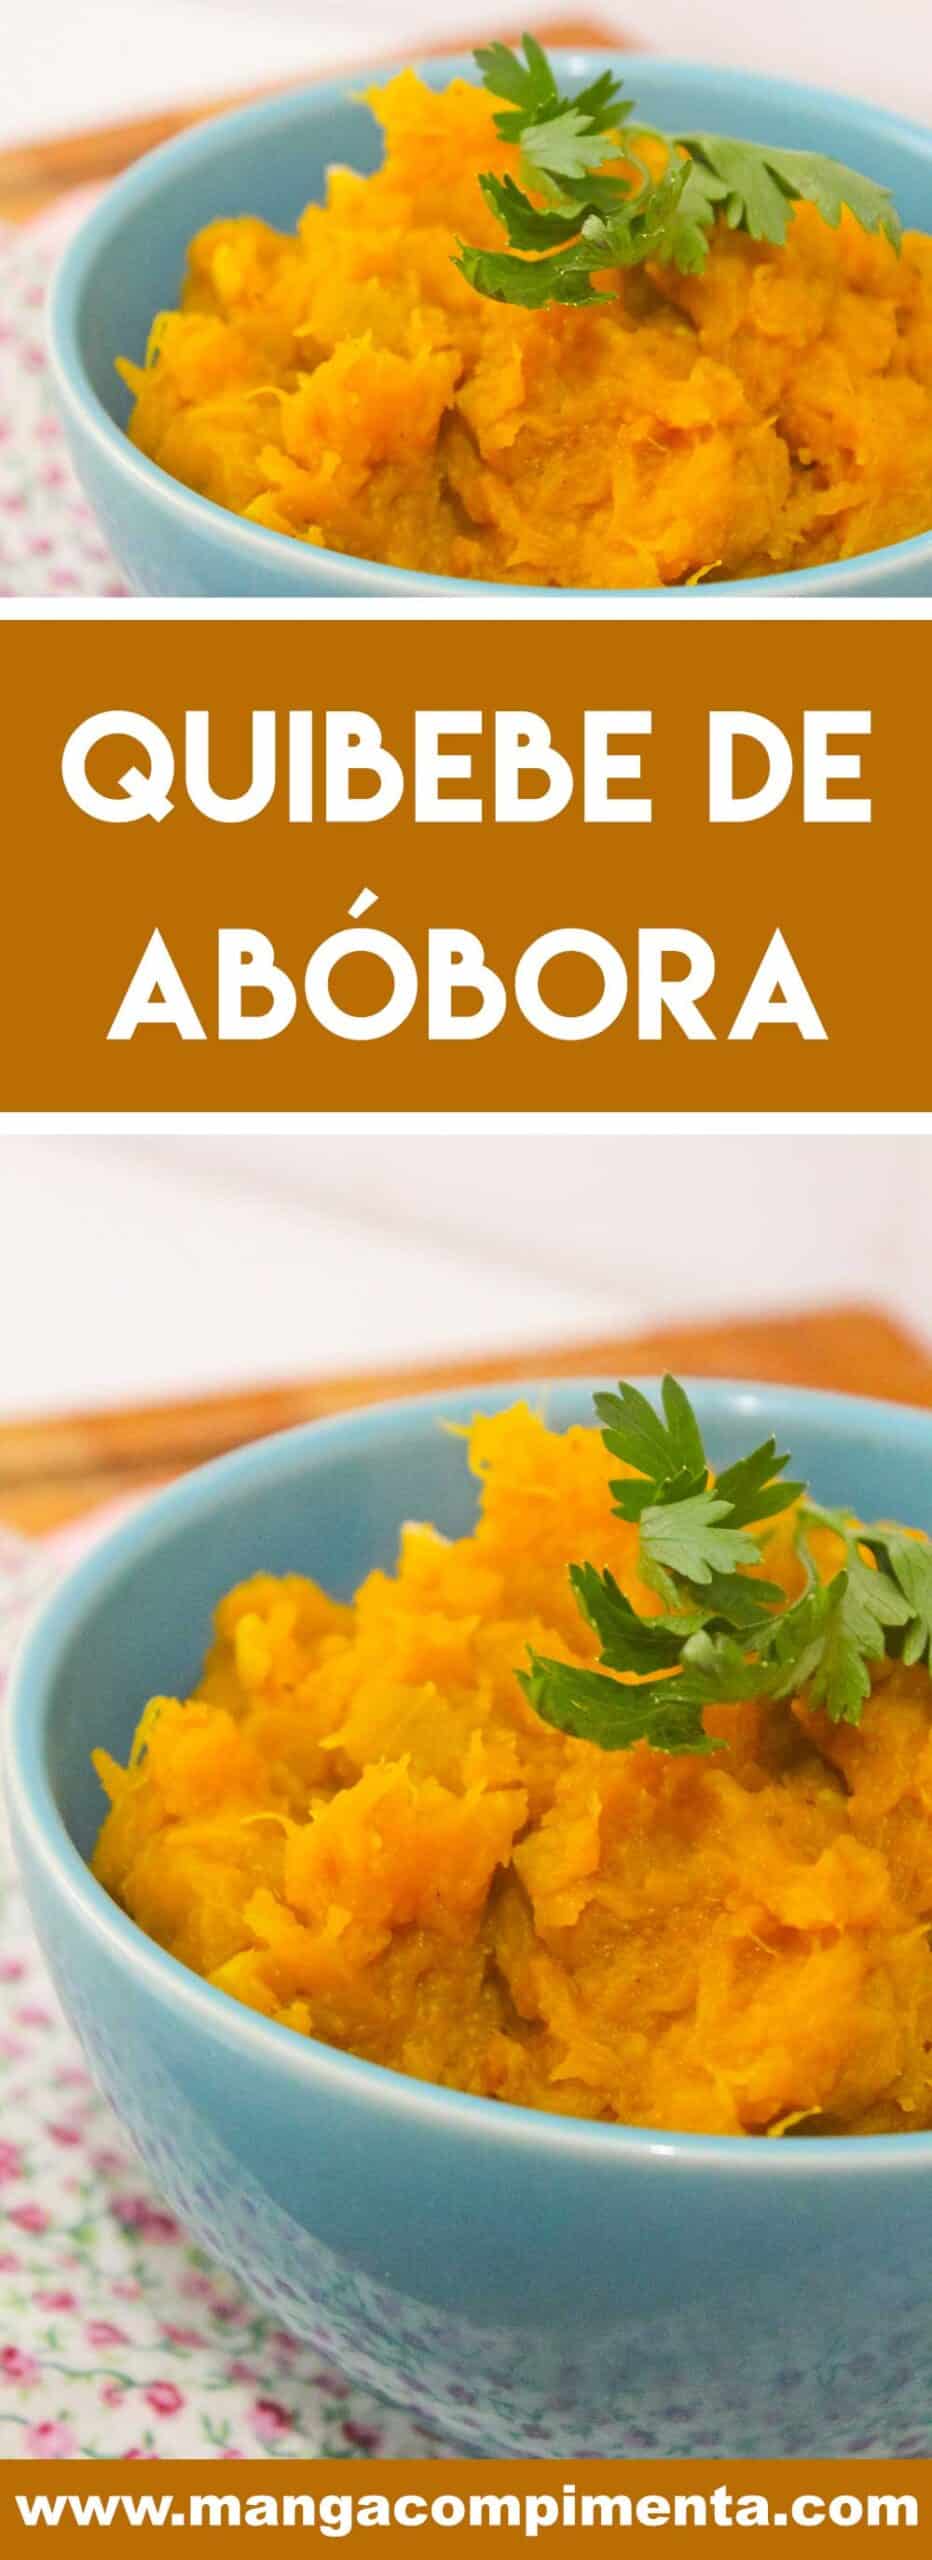 Receita de Quibebe de Abóbora - prato simples e delicioso para o almoço da semana.